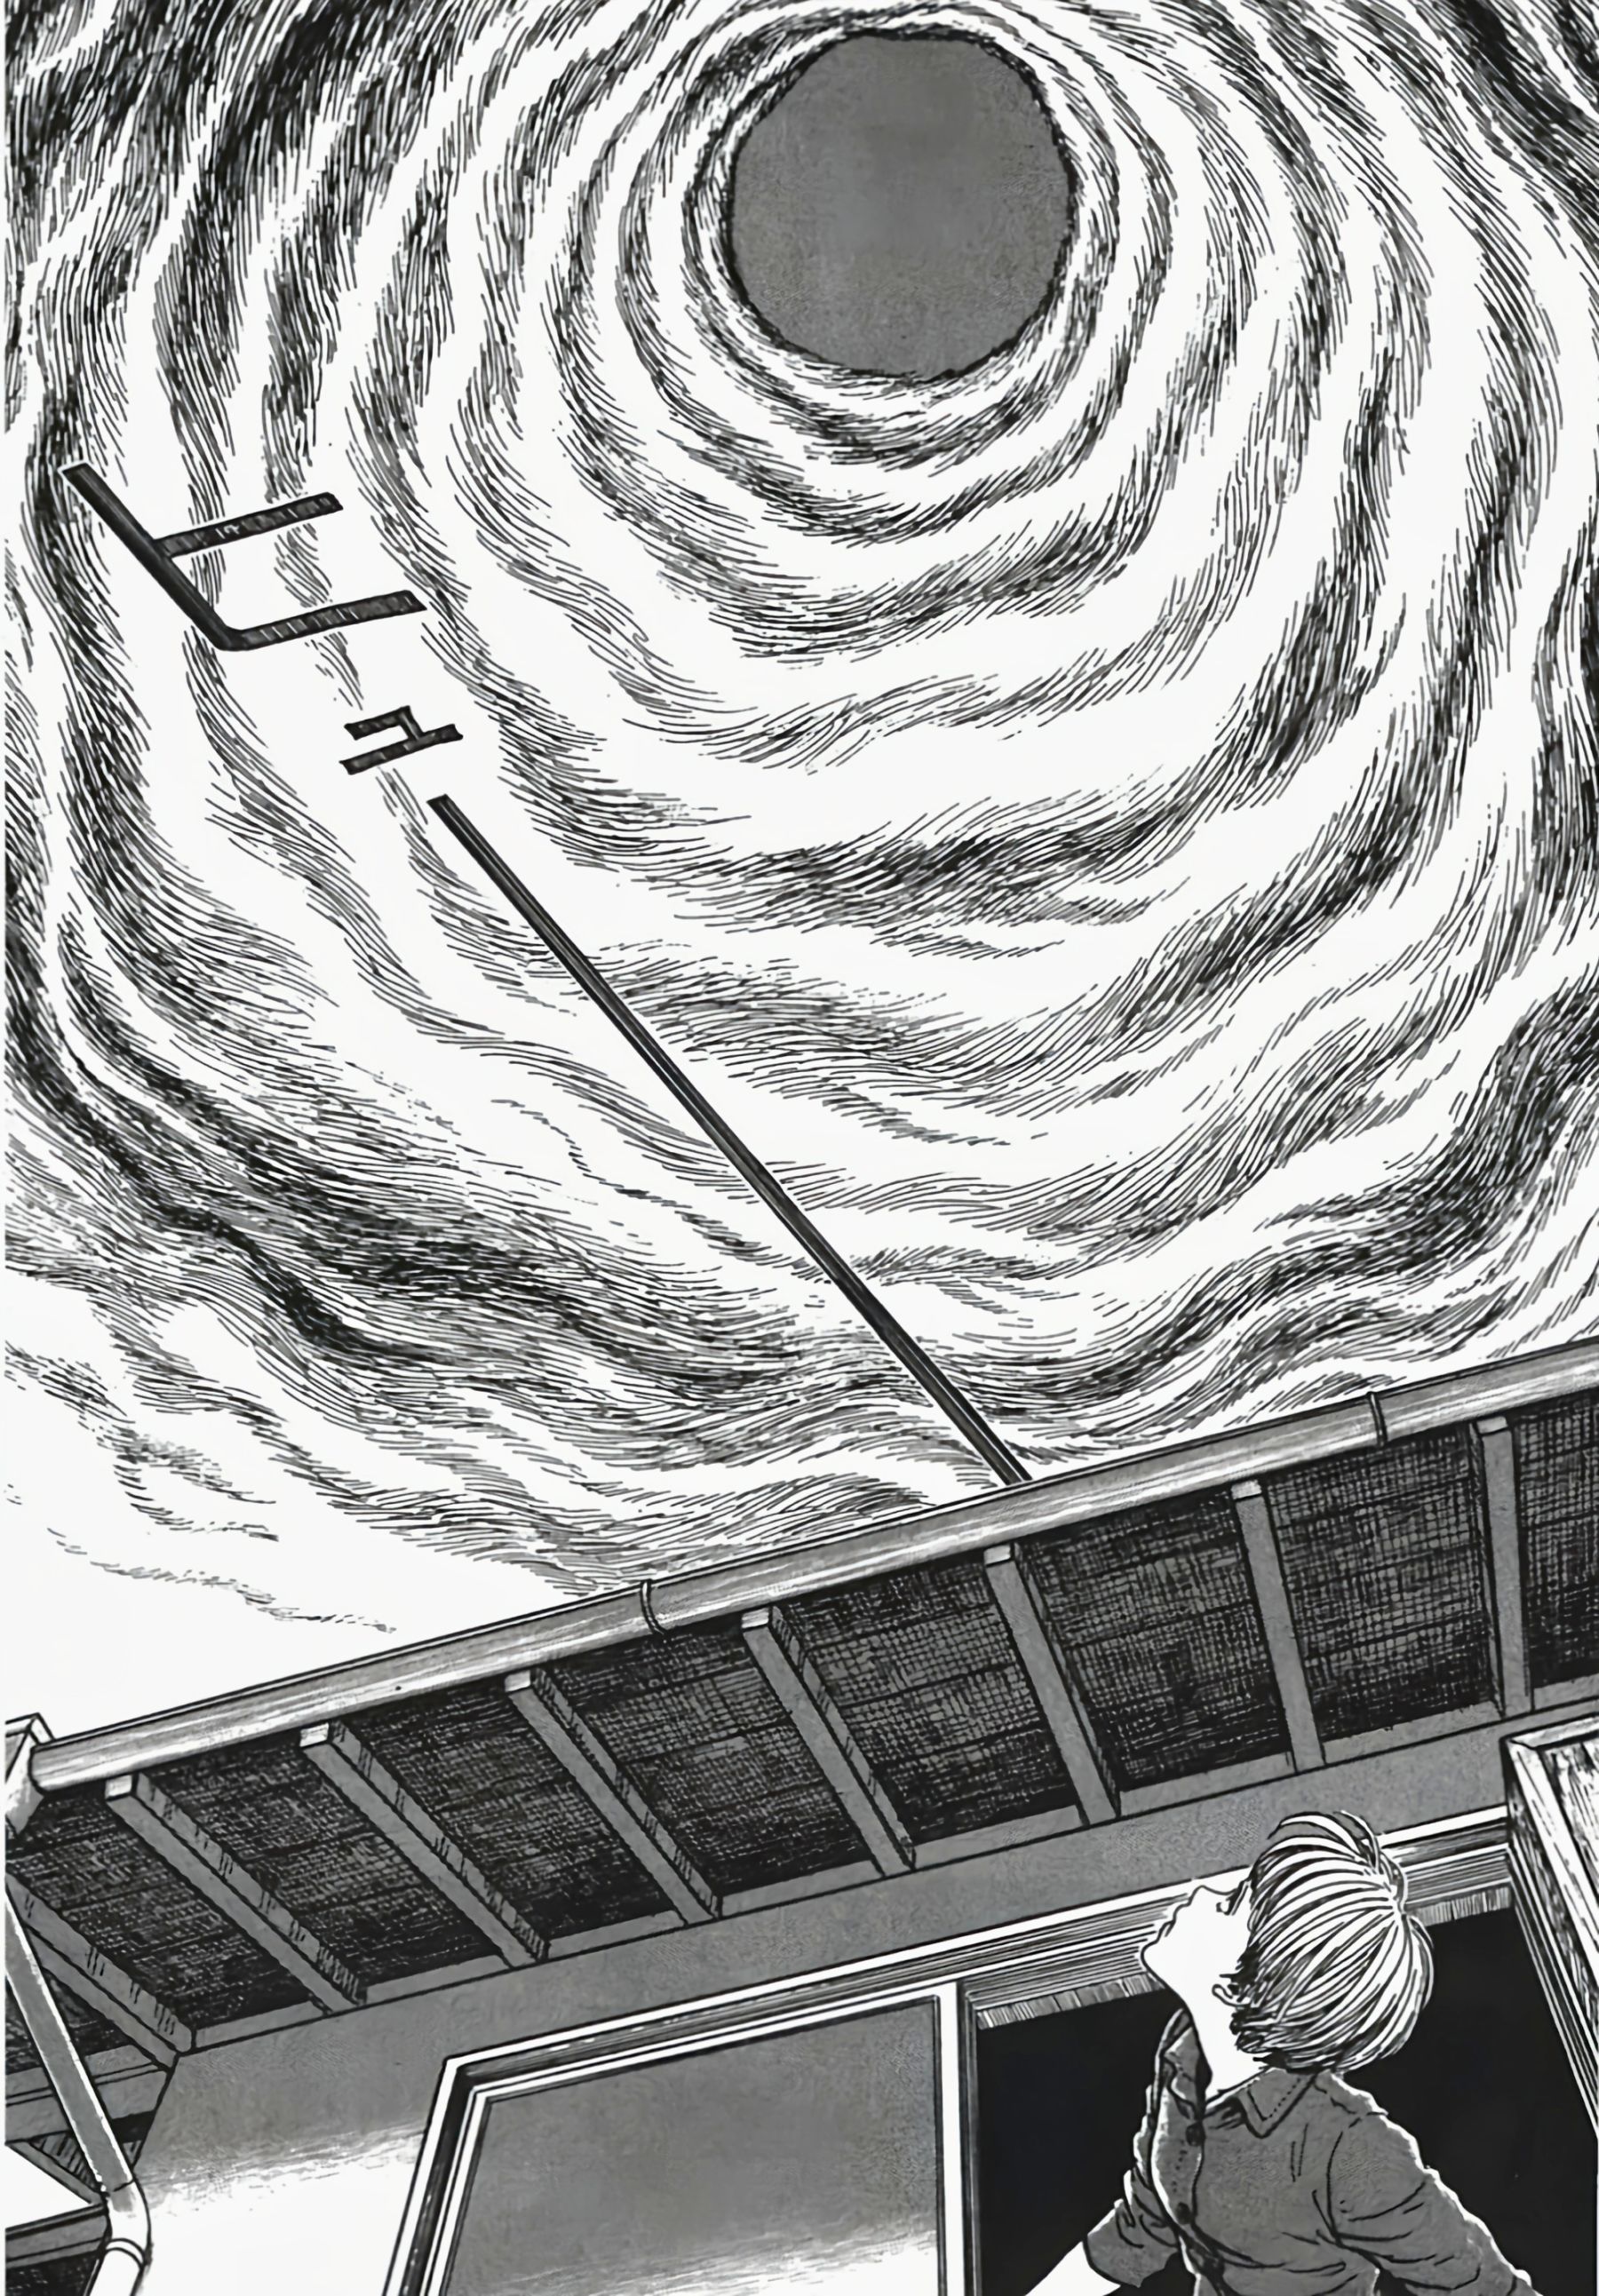 【影视动漫】伊藤润二的恐怖漫画《漩涡》-第16张